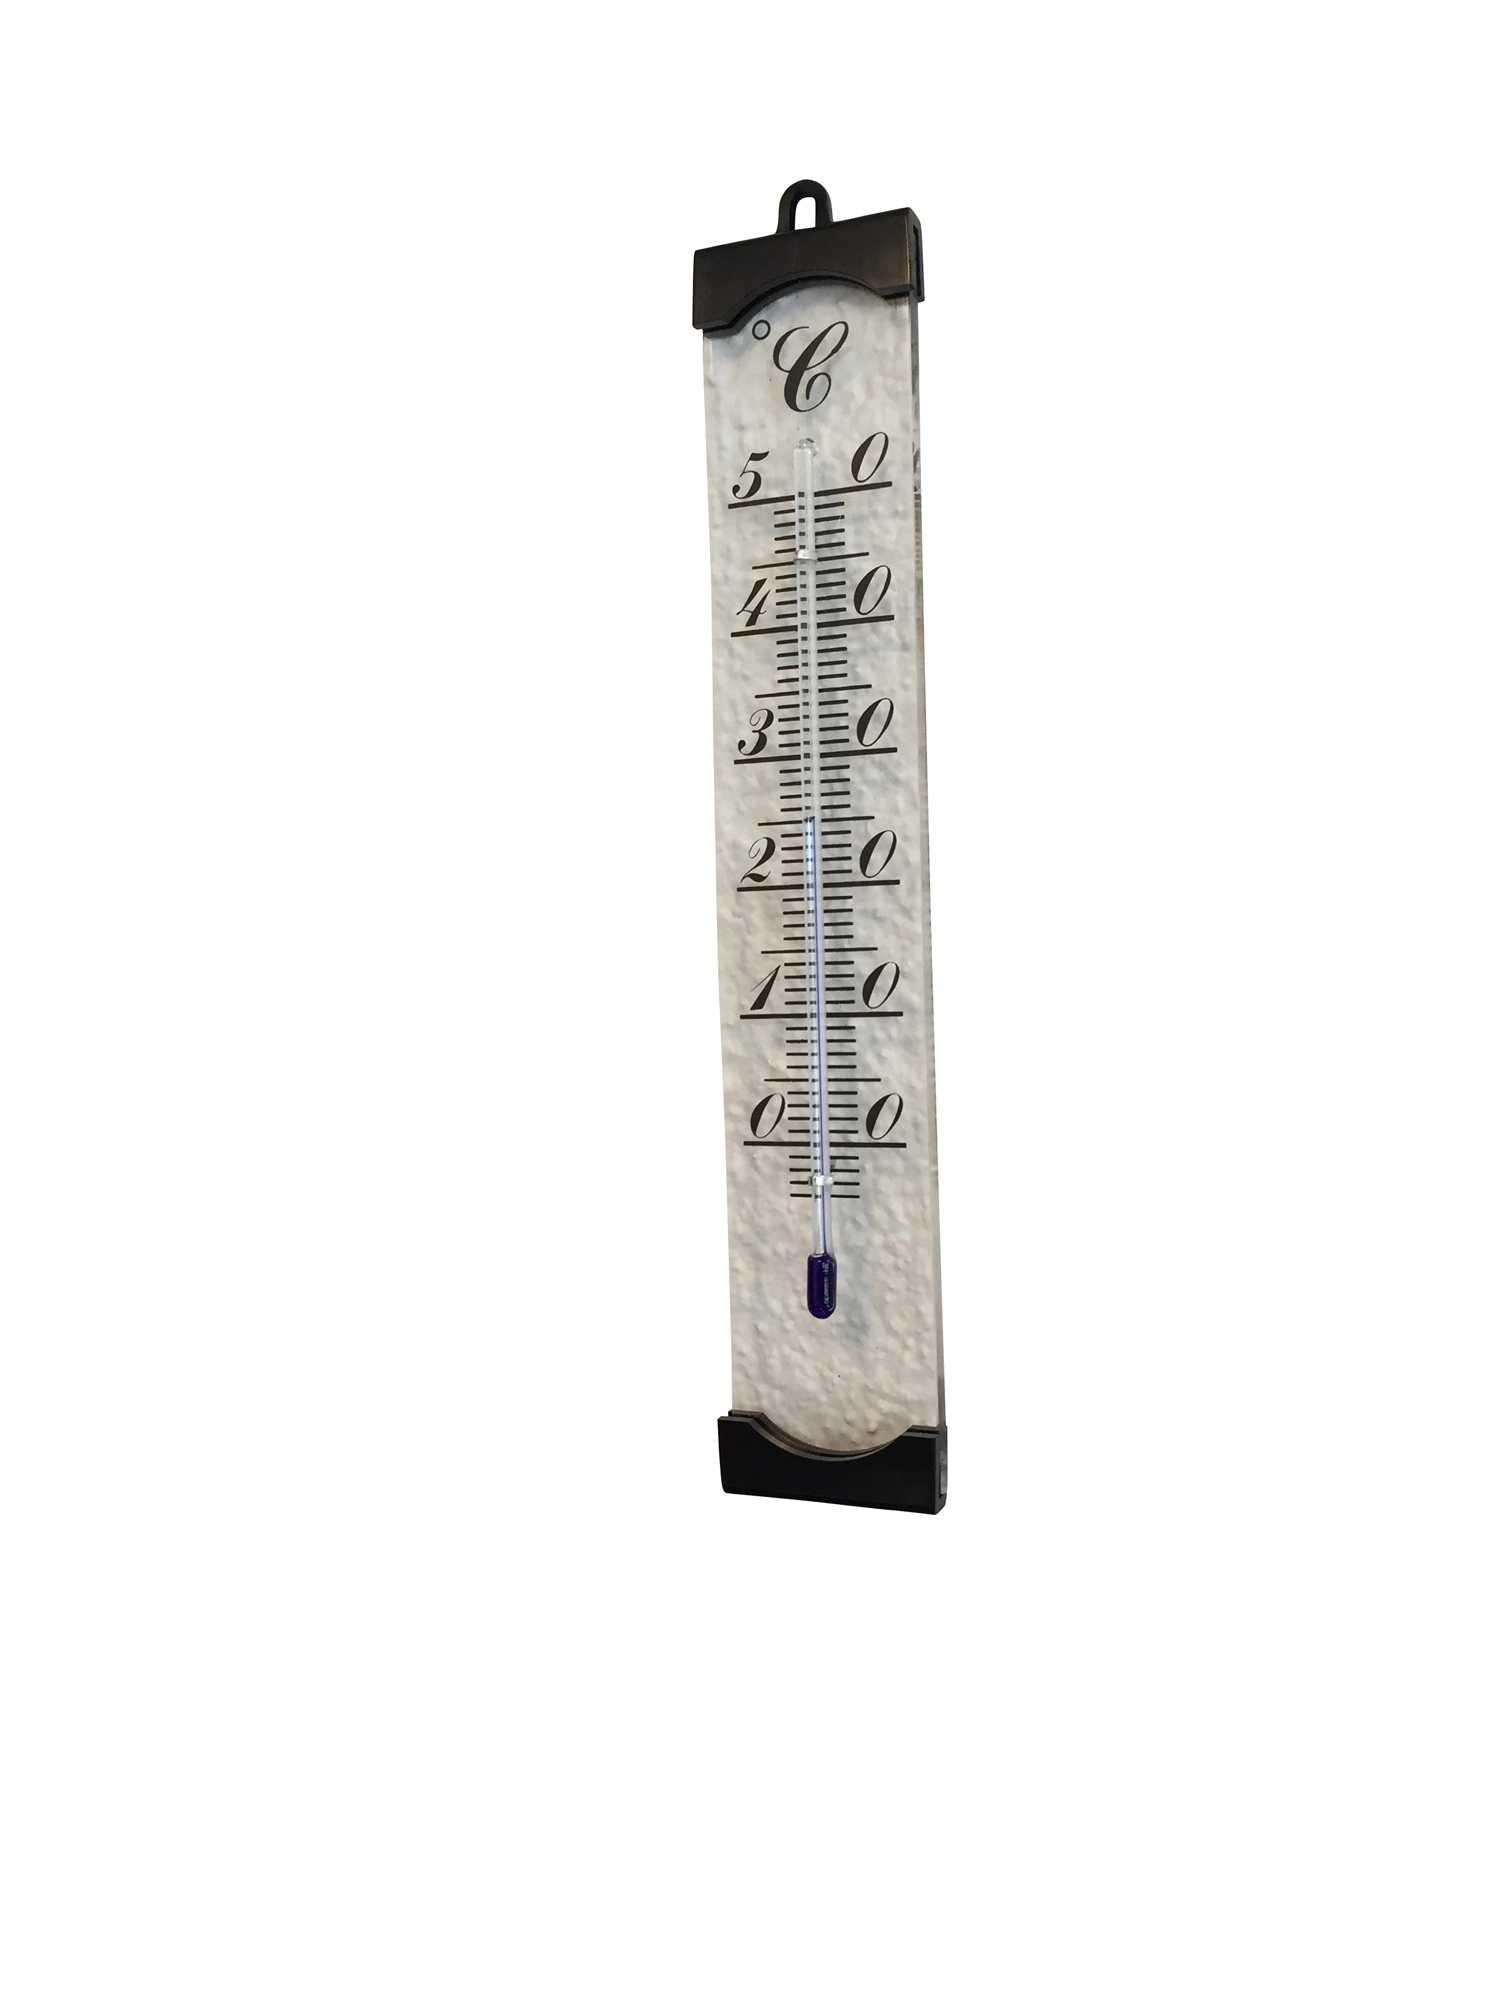 Möller Therm Zimmer-Thermometer 20 cm kaufen bei OBI